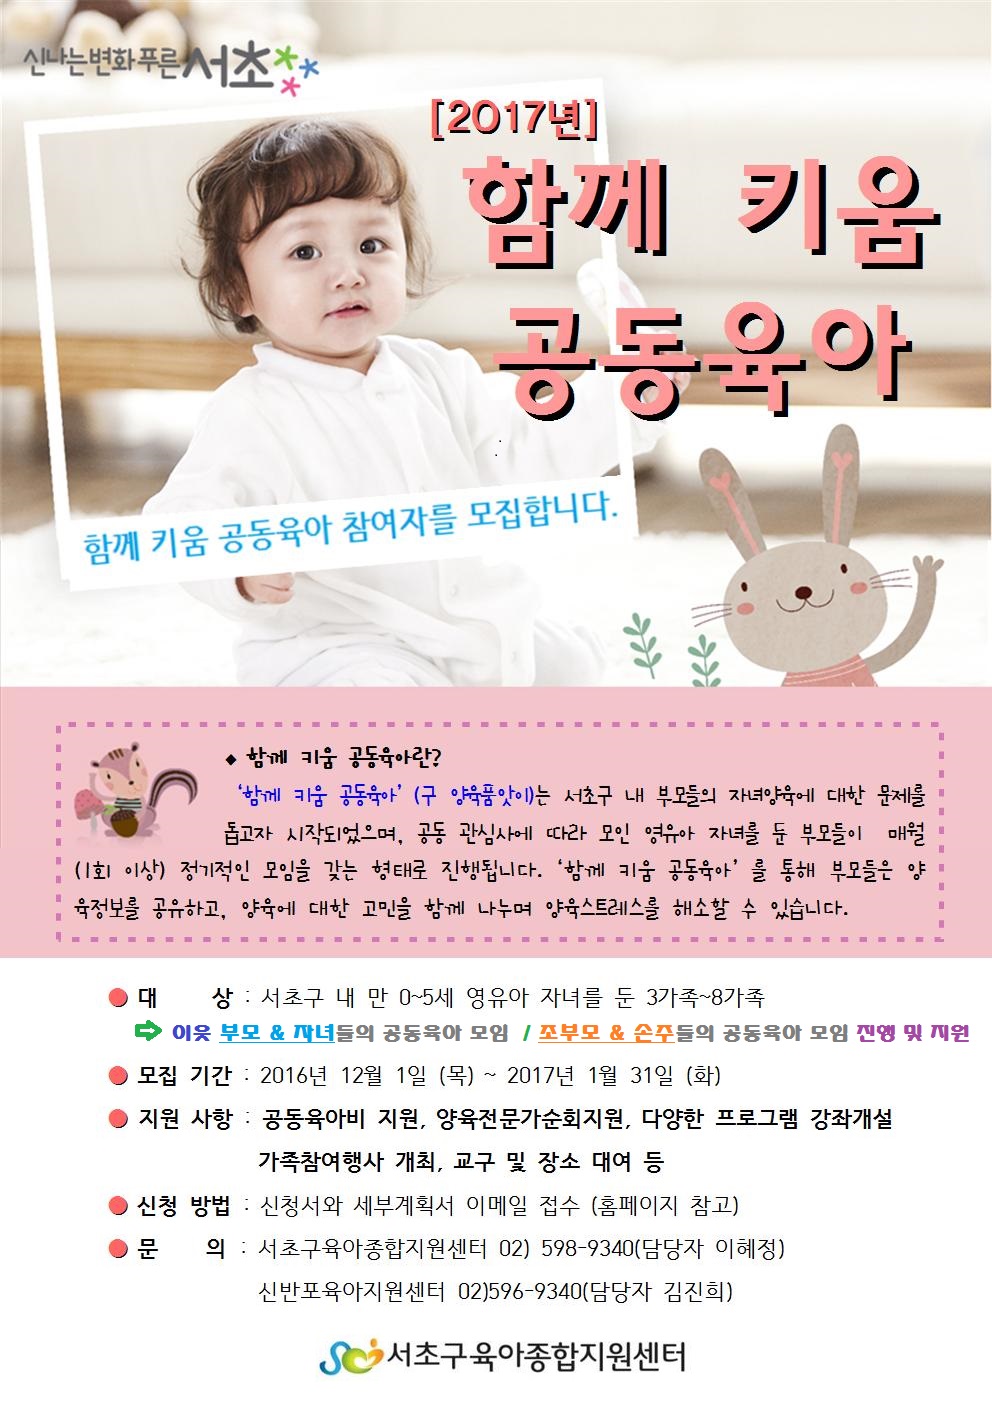 함께 키움 모집 리플릿(홈페이지 게재 12월)_조부모 수정